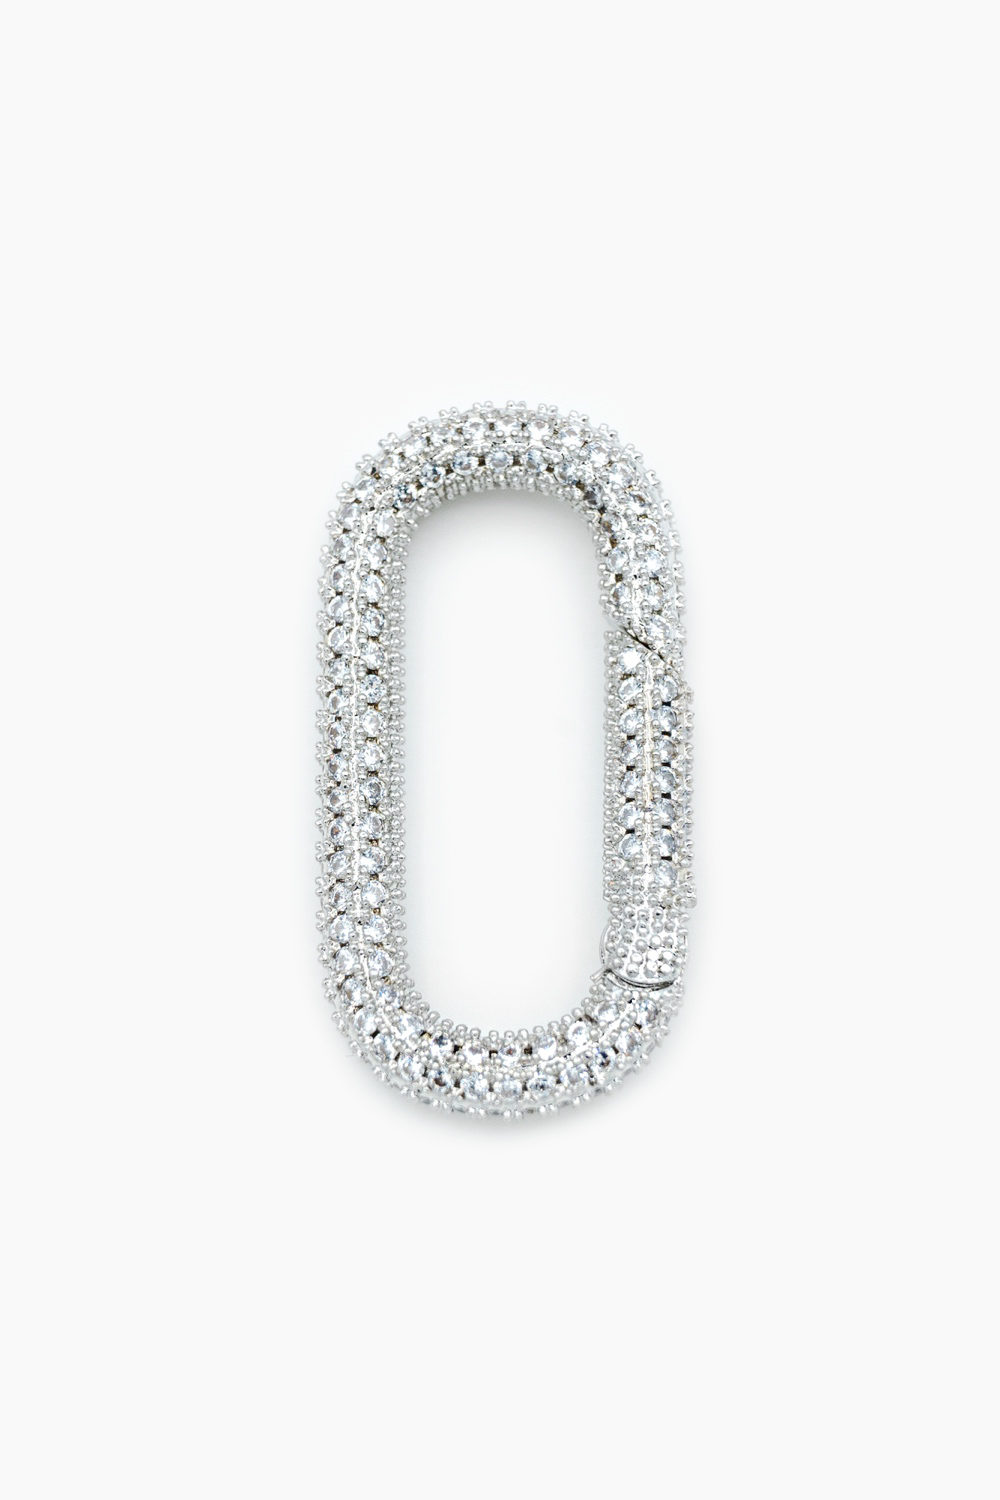 Jewellery Concept: Lock Zirconias Prata